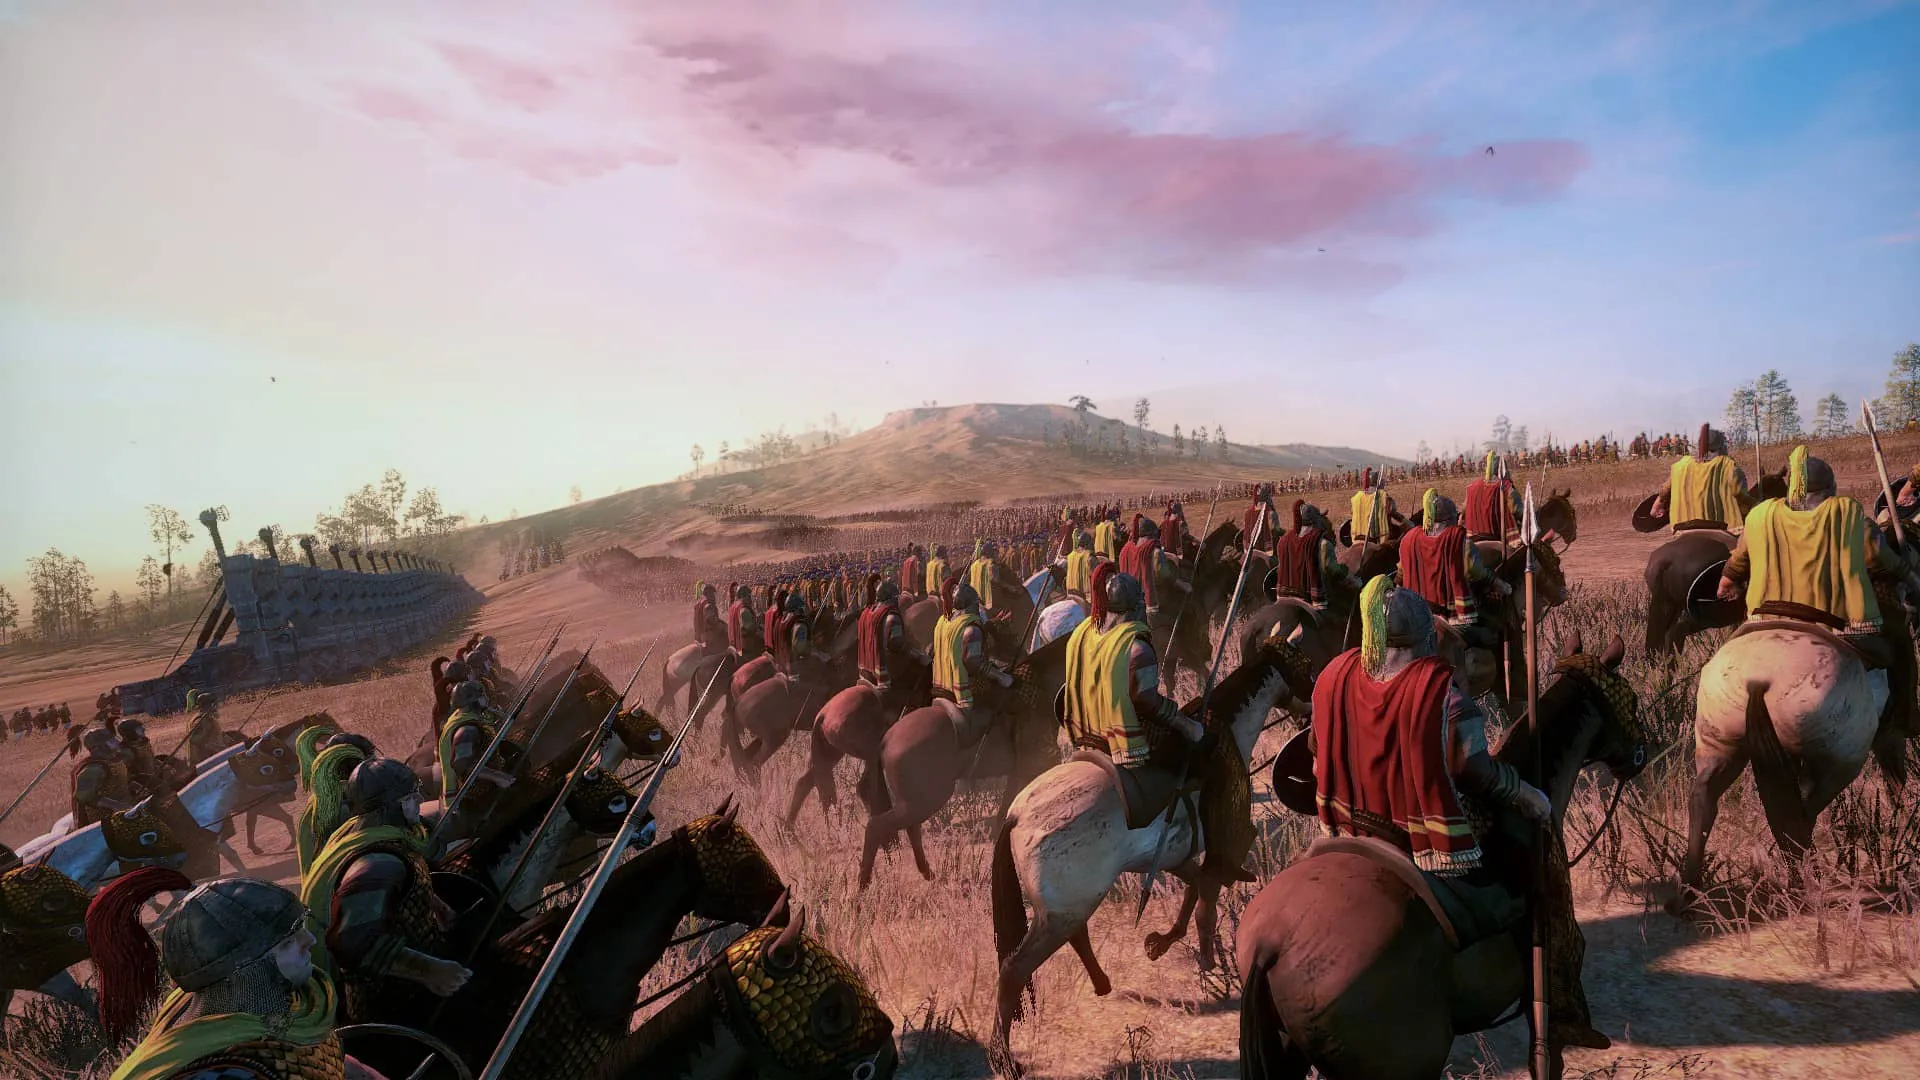 دانلود مد Ancient Empires: Dust Particles برای بازی Total War: Attila